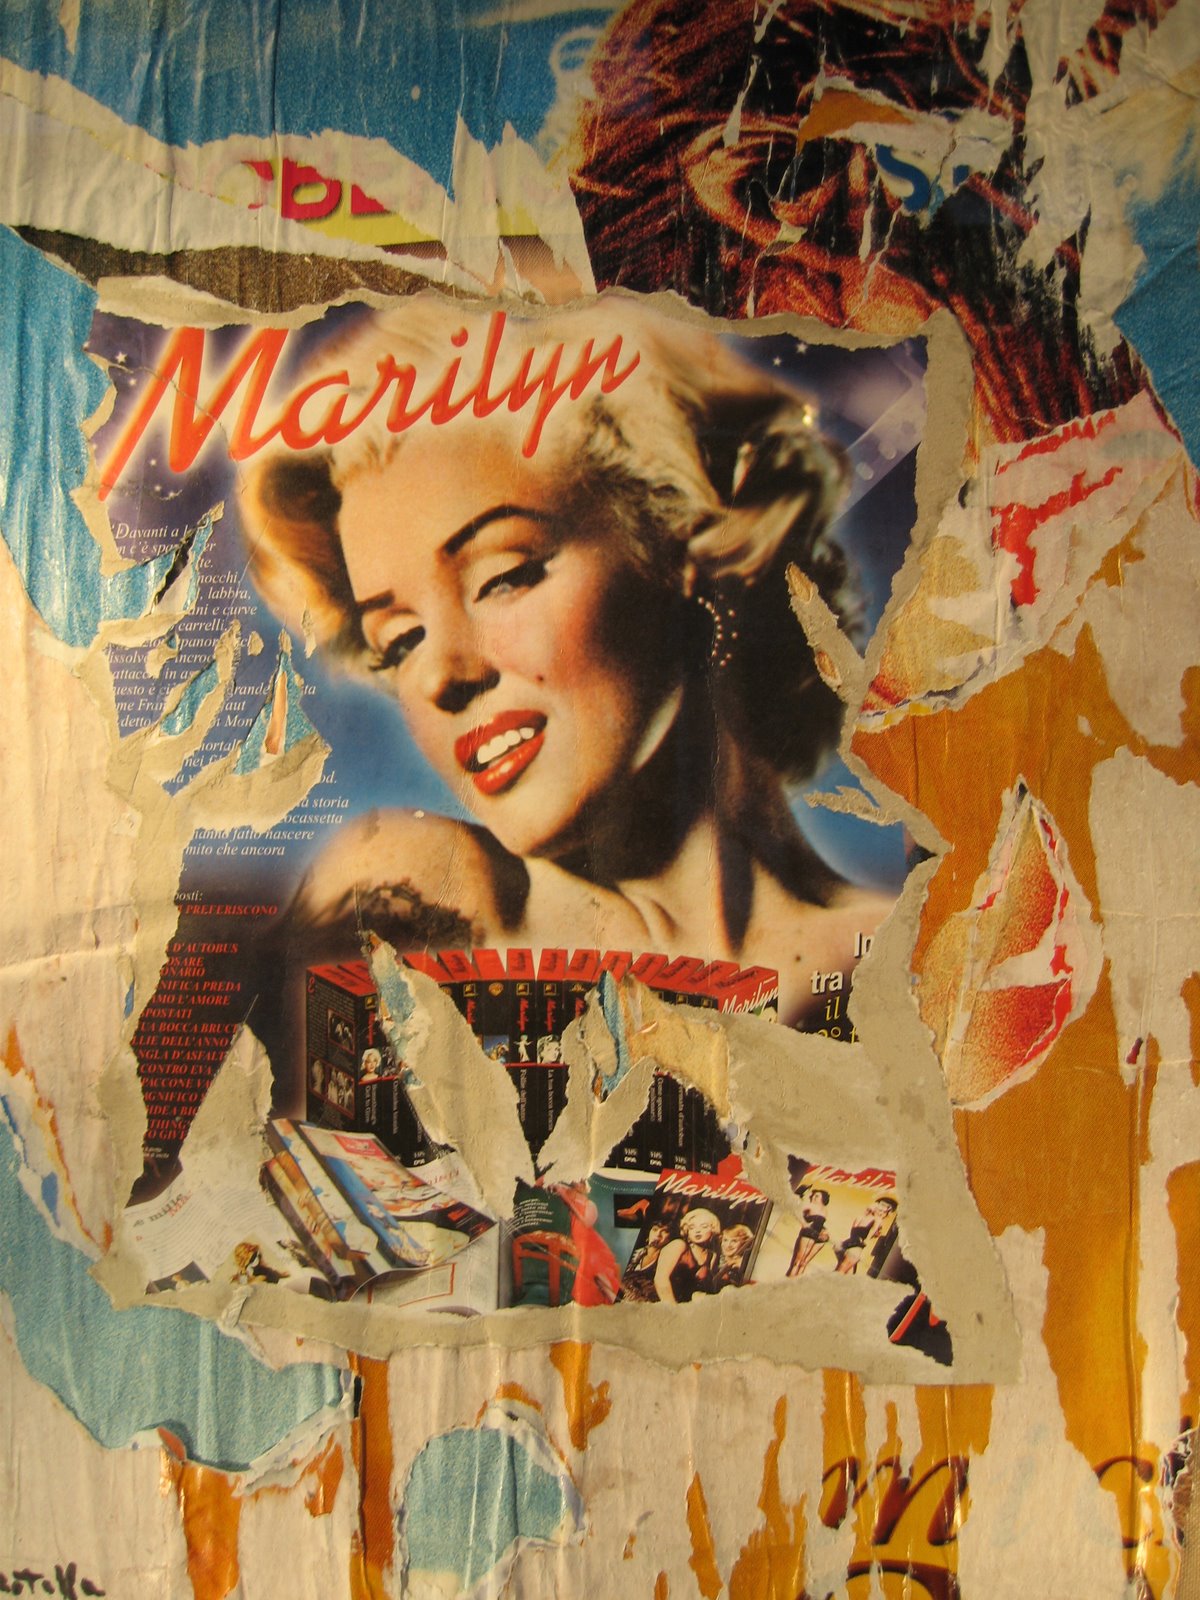 [Marilyn+by+Rotella.JPG]